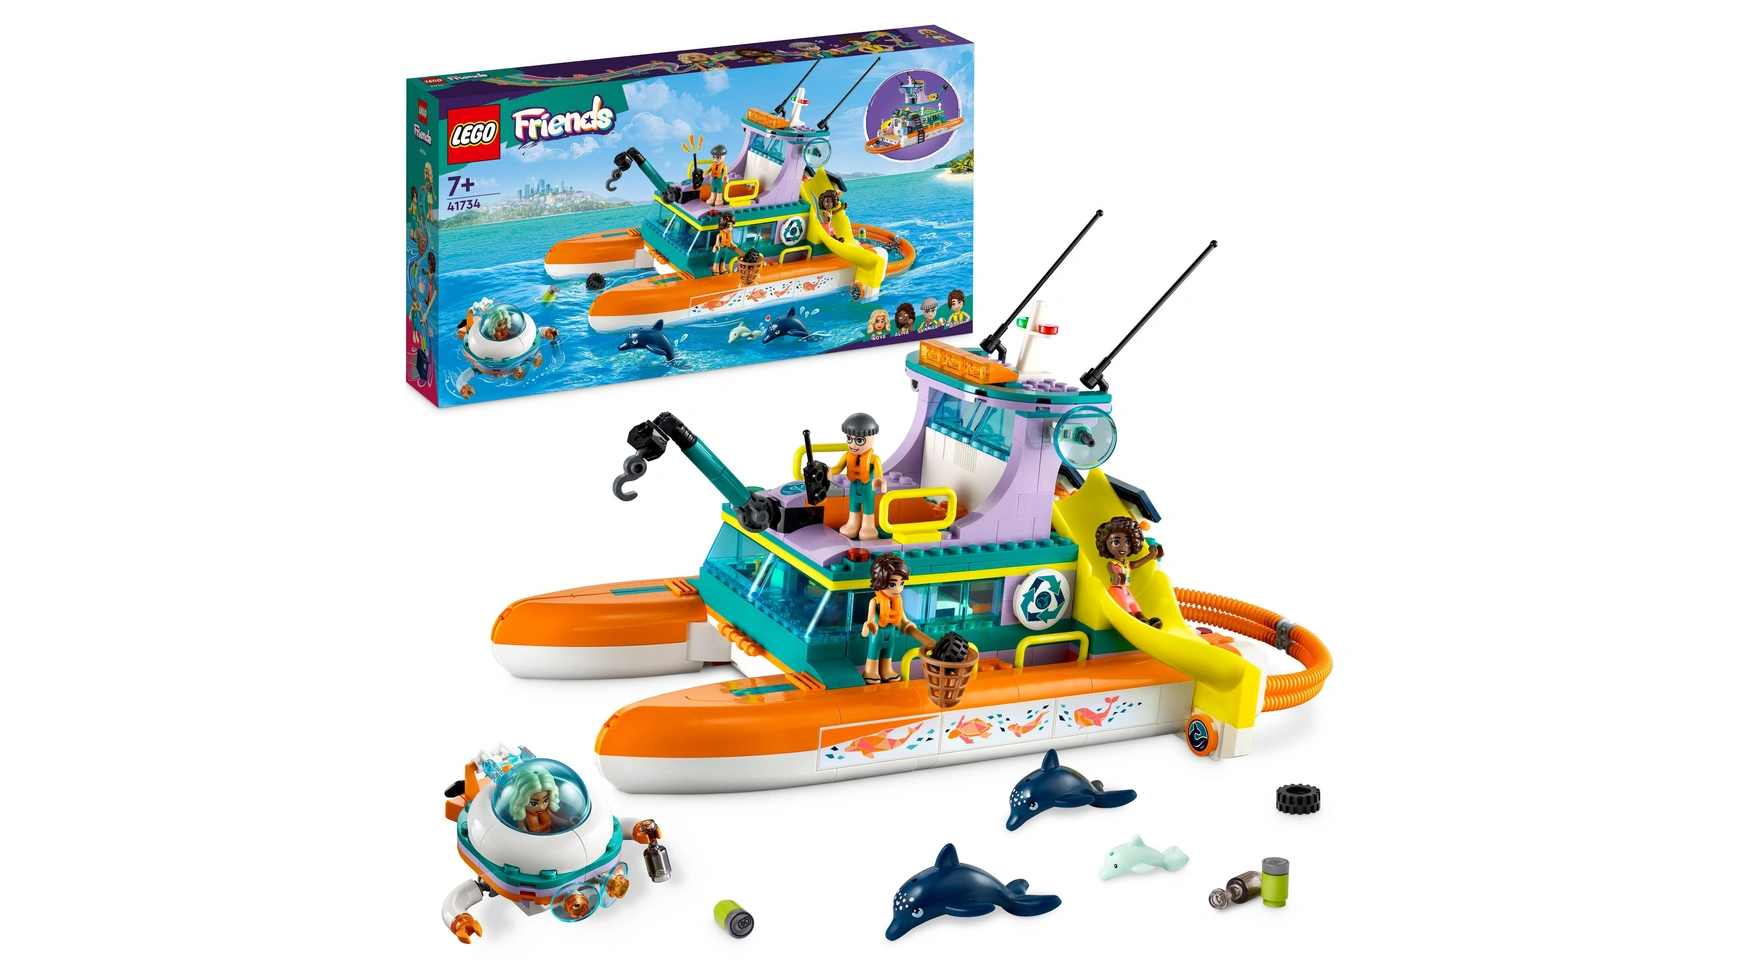 Lego Friends Набор Морской спасательный катер, игрушка с животными для детей lego 41717 mia s wildlife rescue